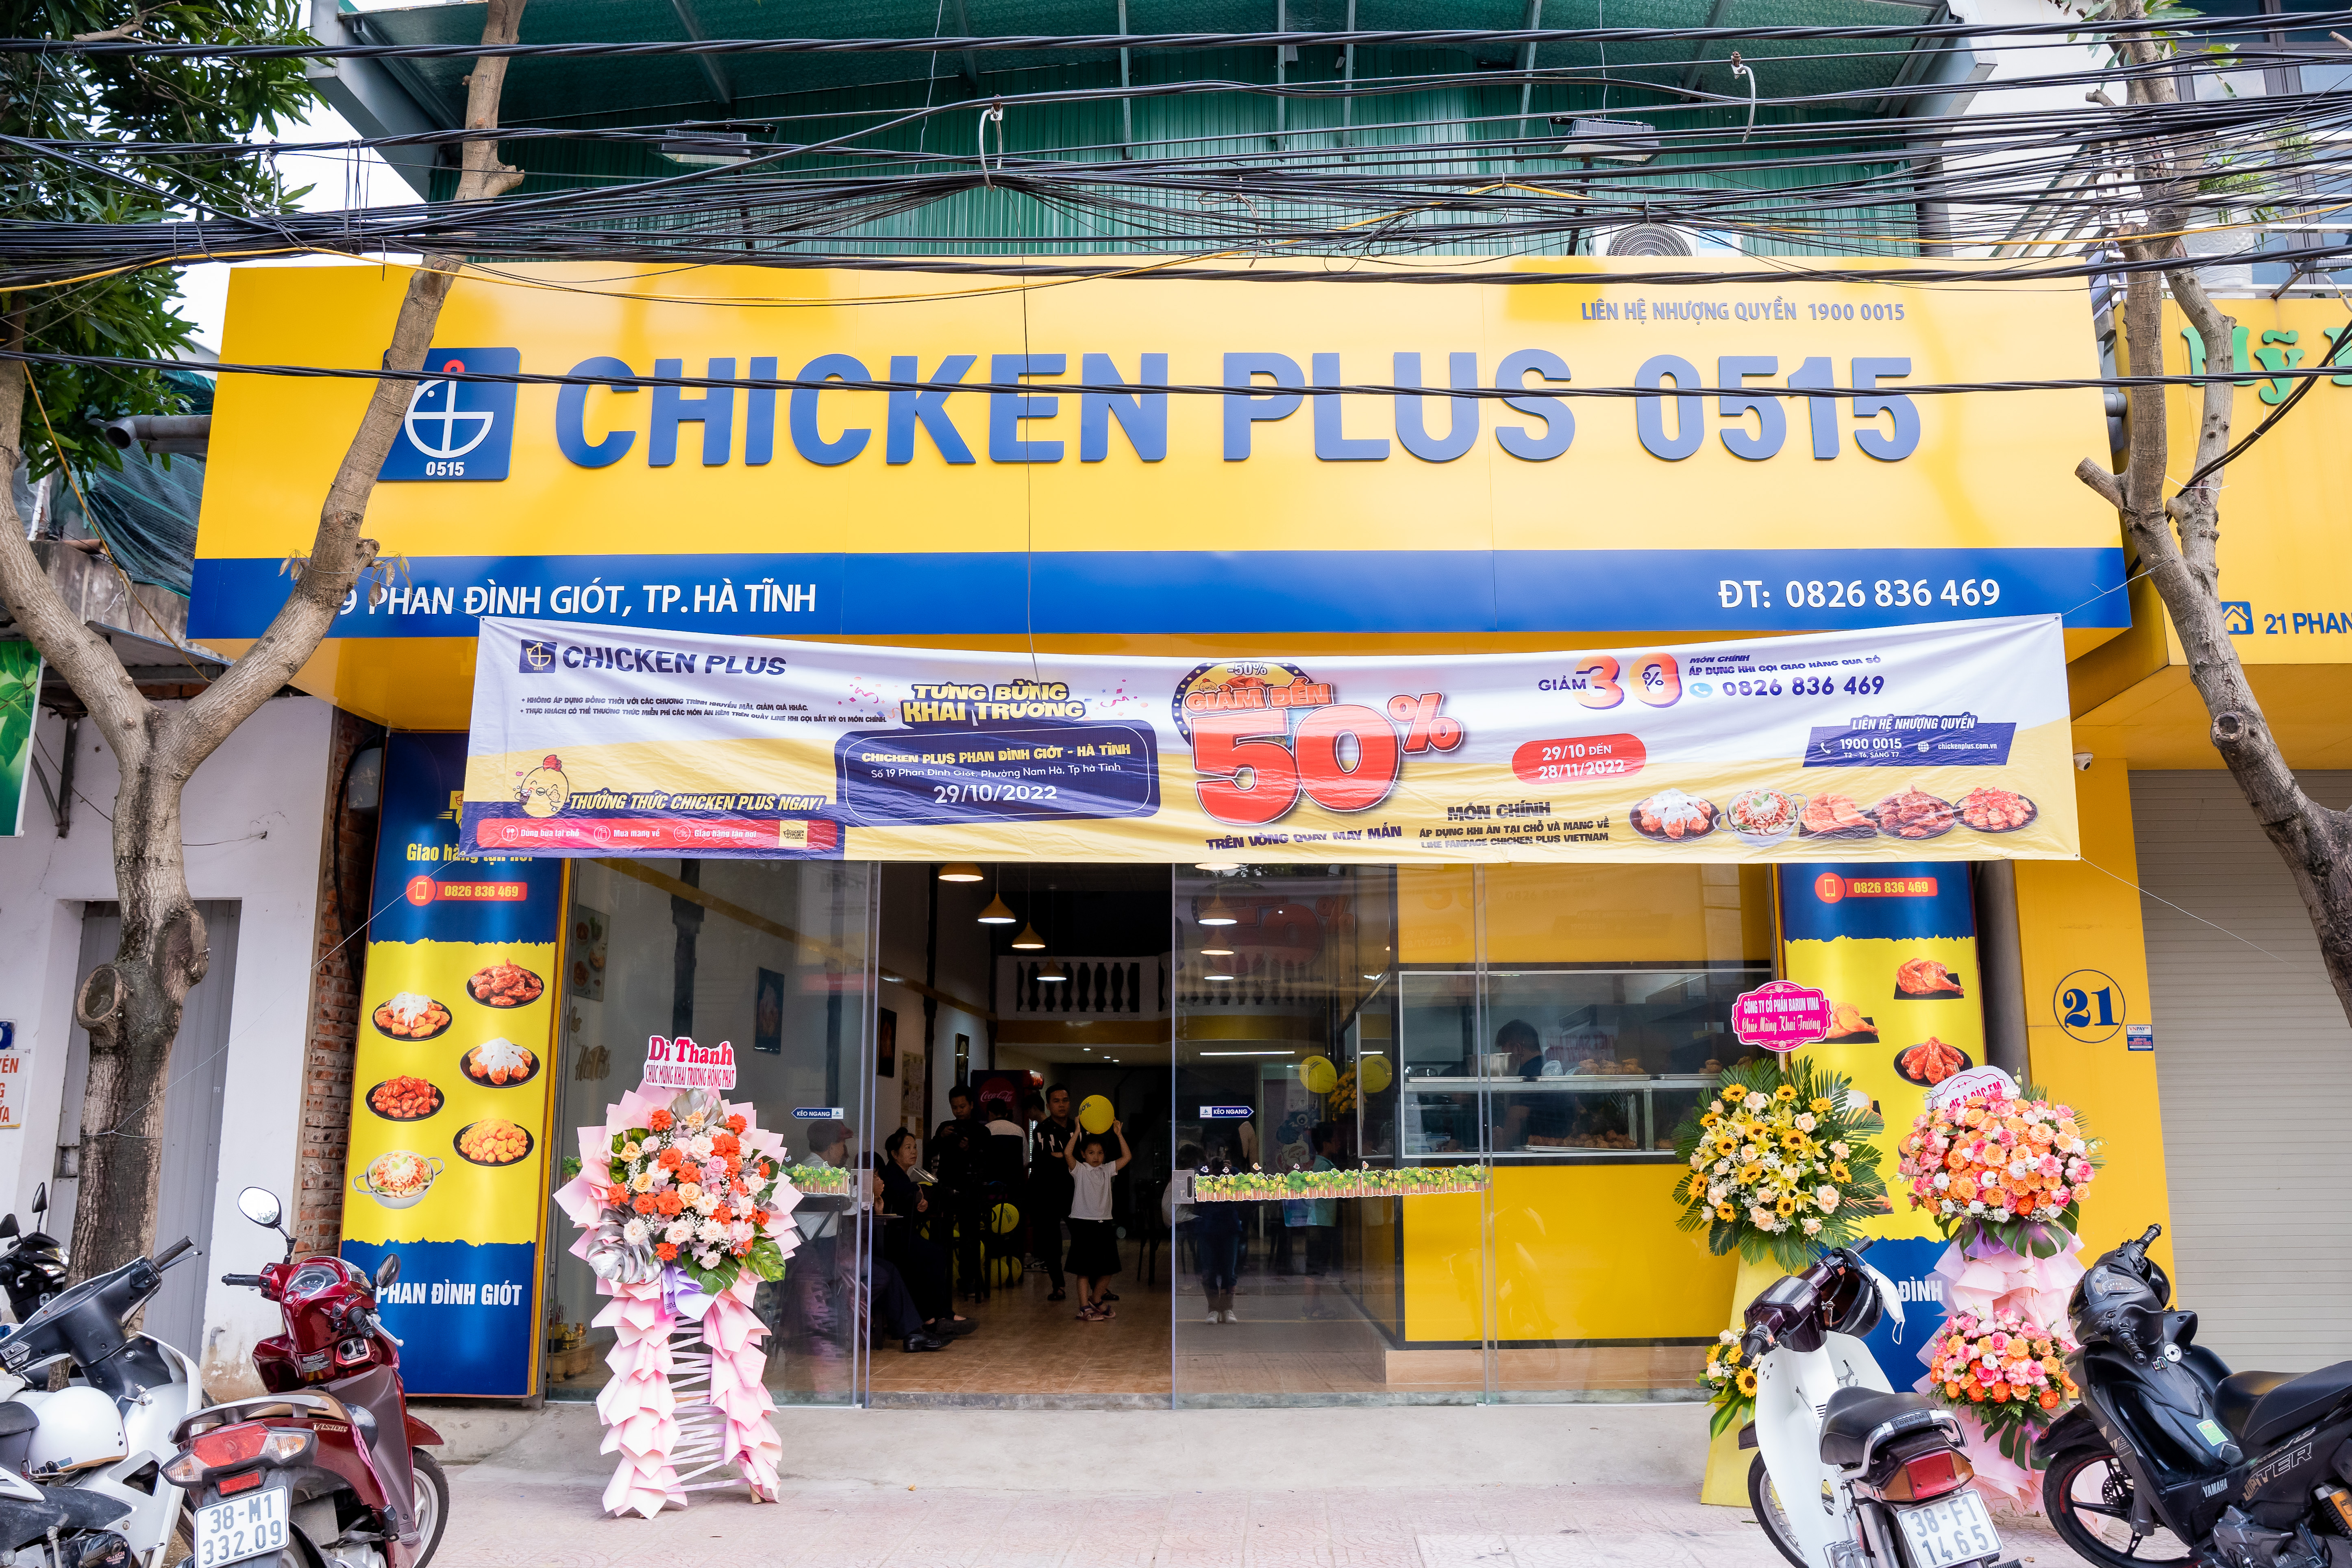 Chicken Plus Phan Đình Giót